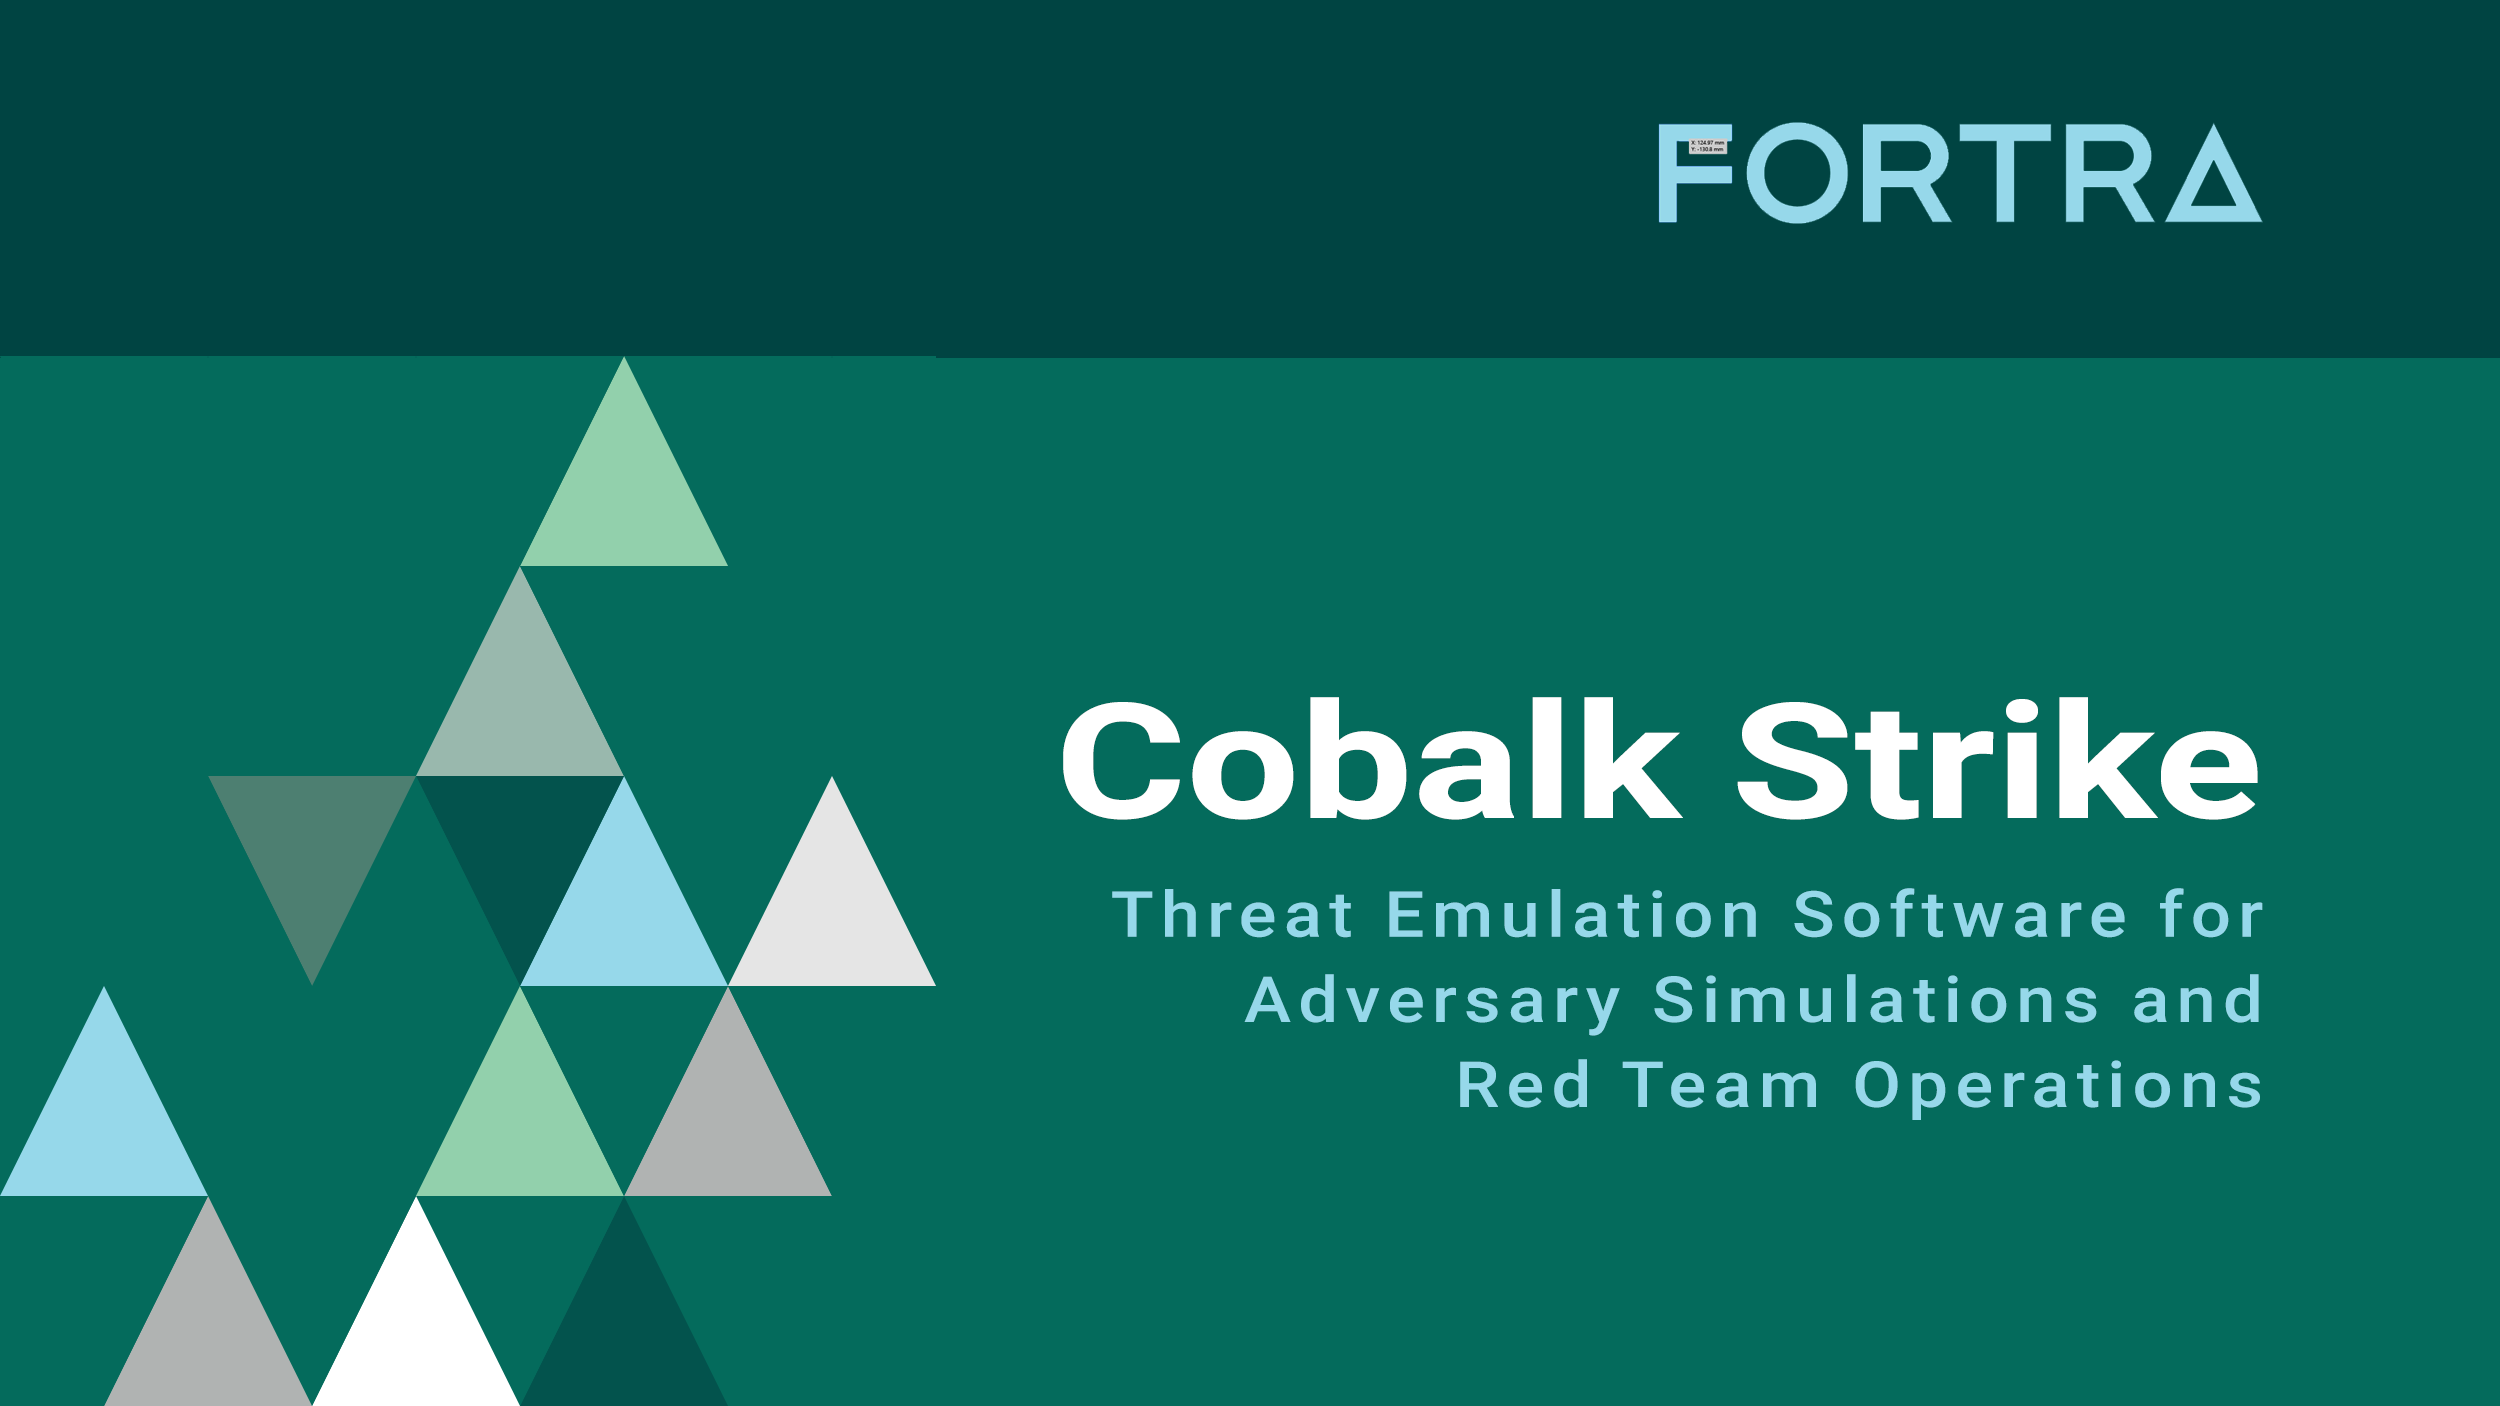 Fortra - Cobalt Strike